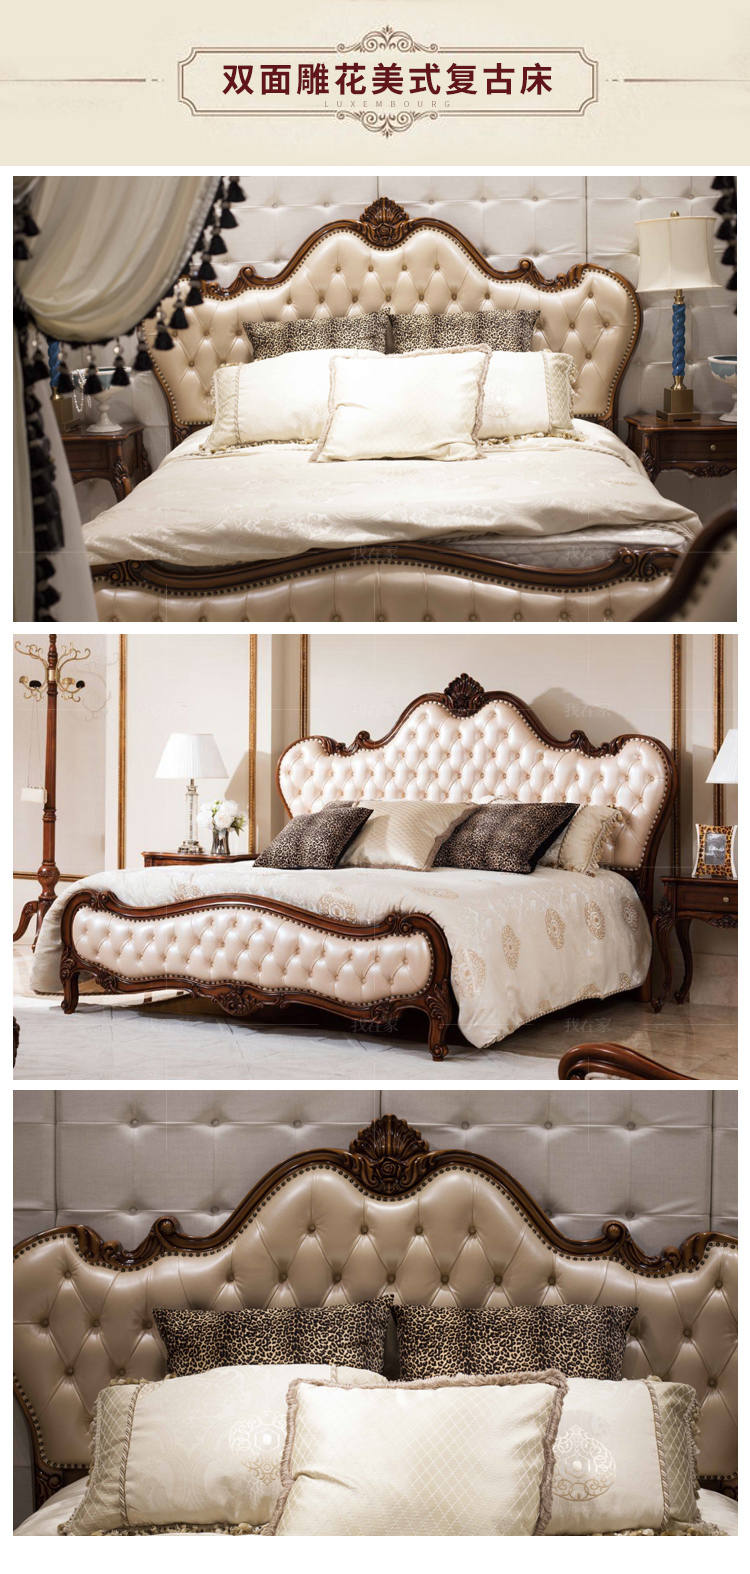 古典欧式风格马可斯双人床的家具详细介绍